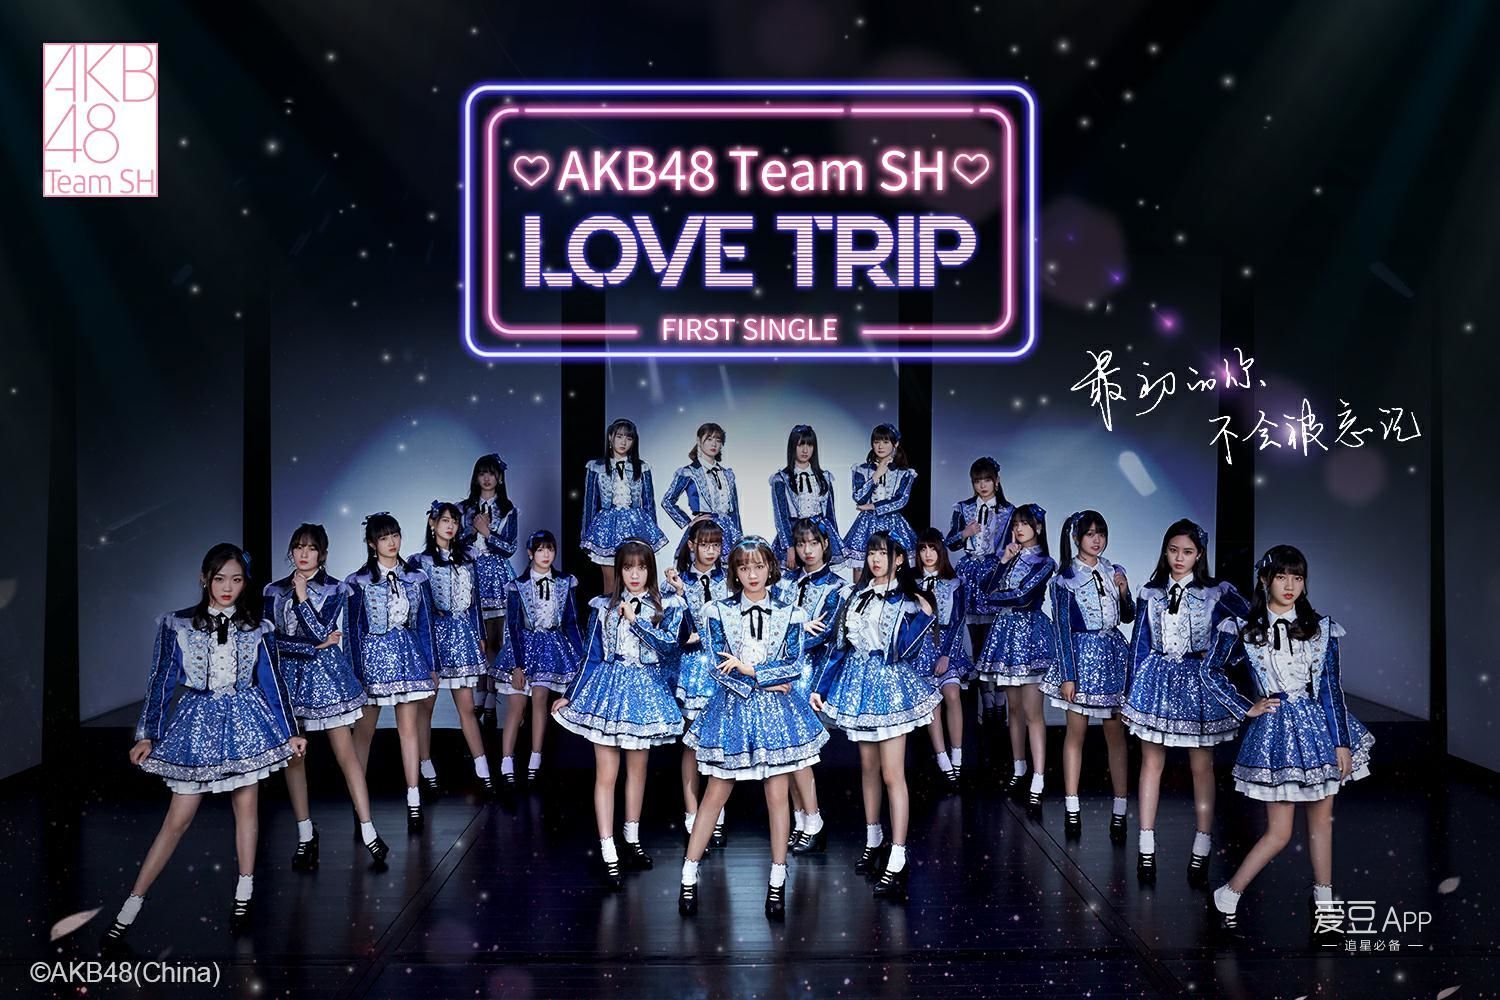 [消息]akb48 team sh 携新曲《love trip》闪亮出道